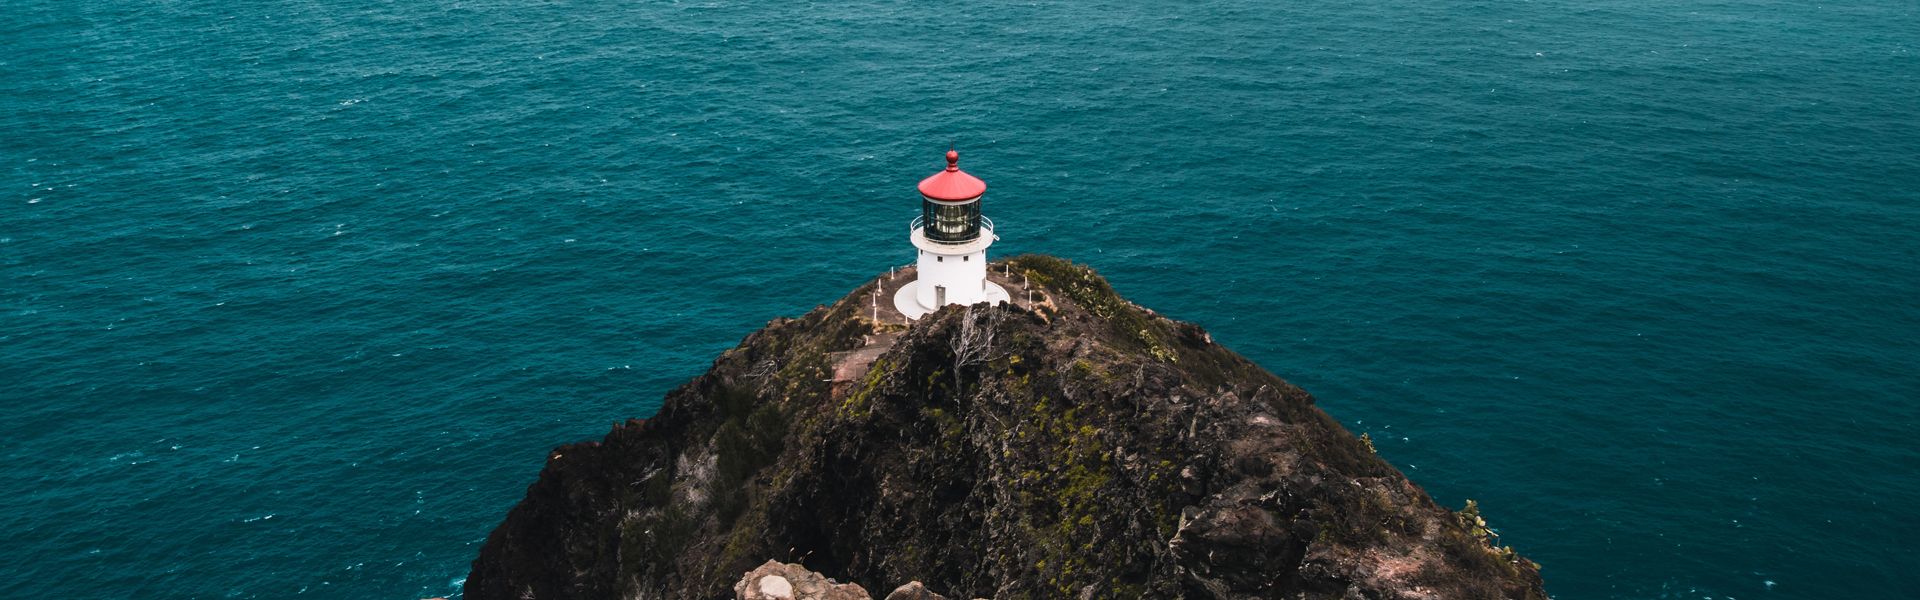 Lighthouse Background Image